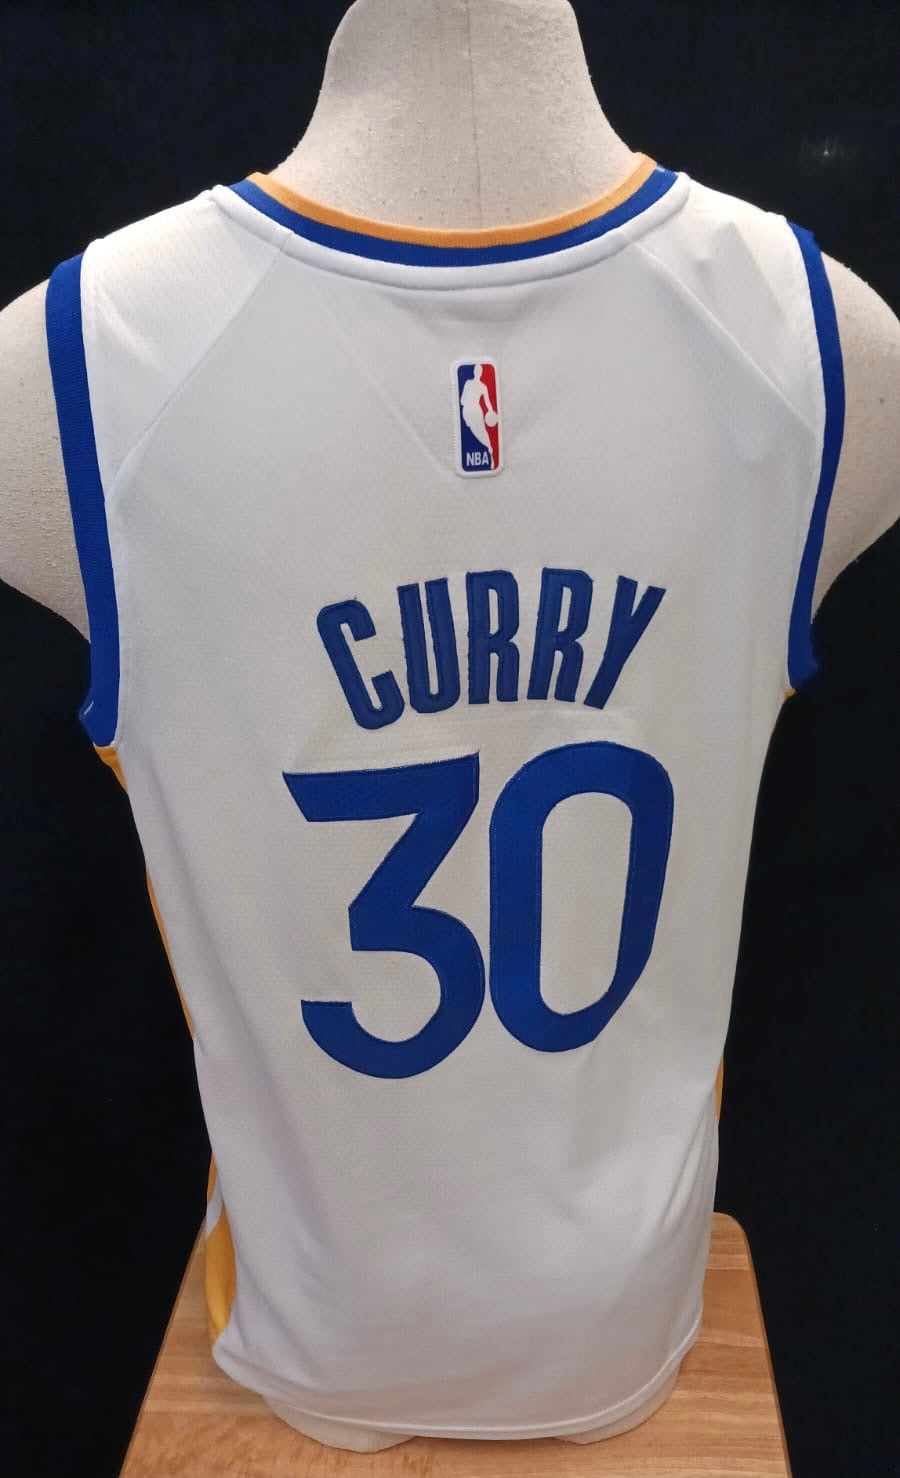 Stephen Curry Golden State Warriors Jersey Dress Comoros